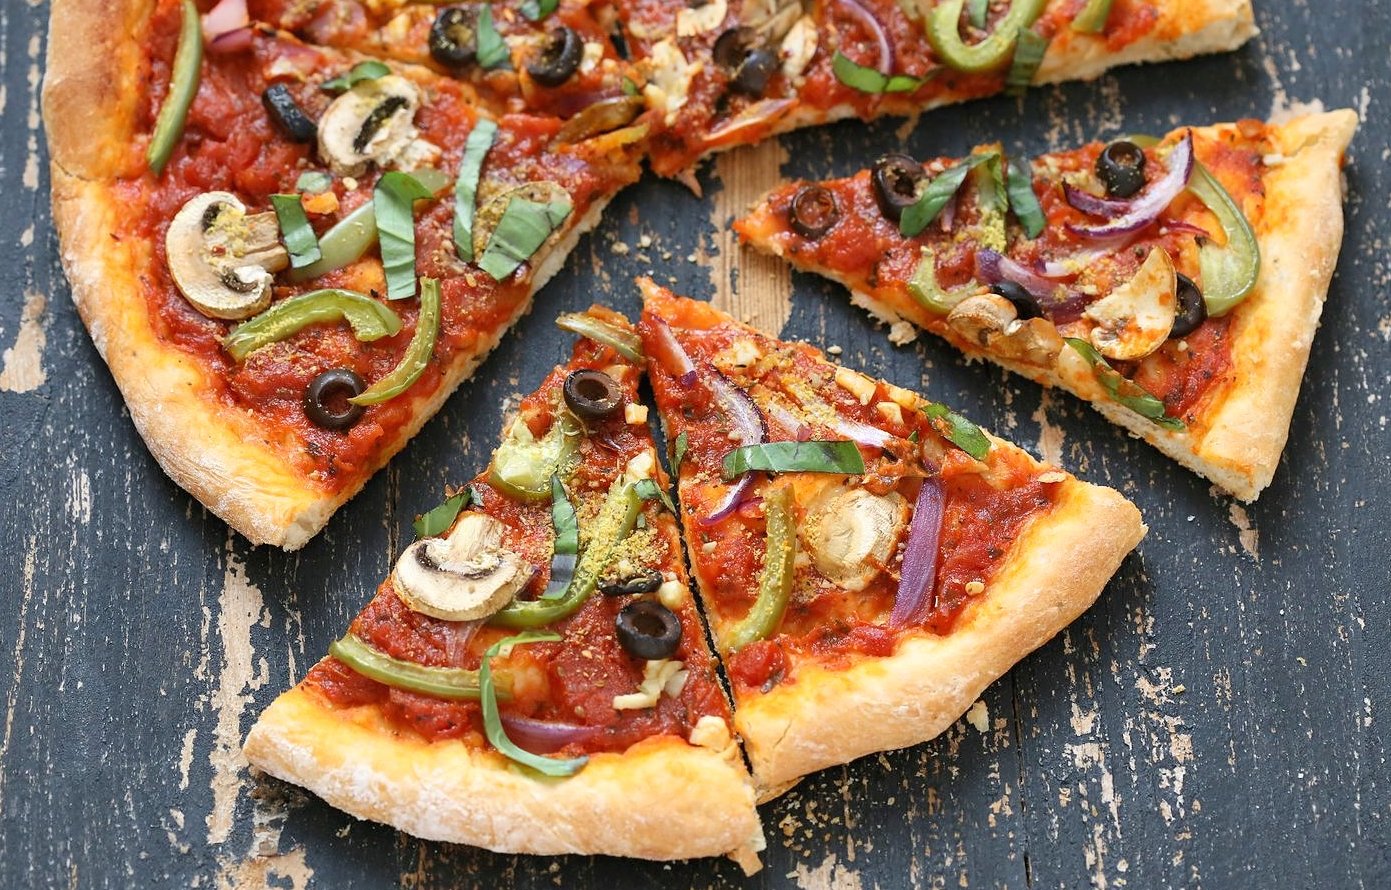 veggie-vegan-pizza-veganricha-5762-1